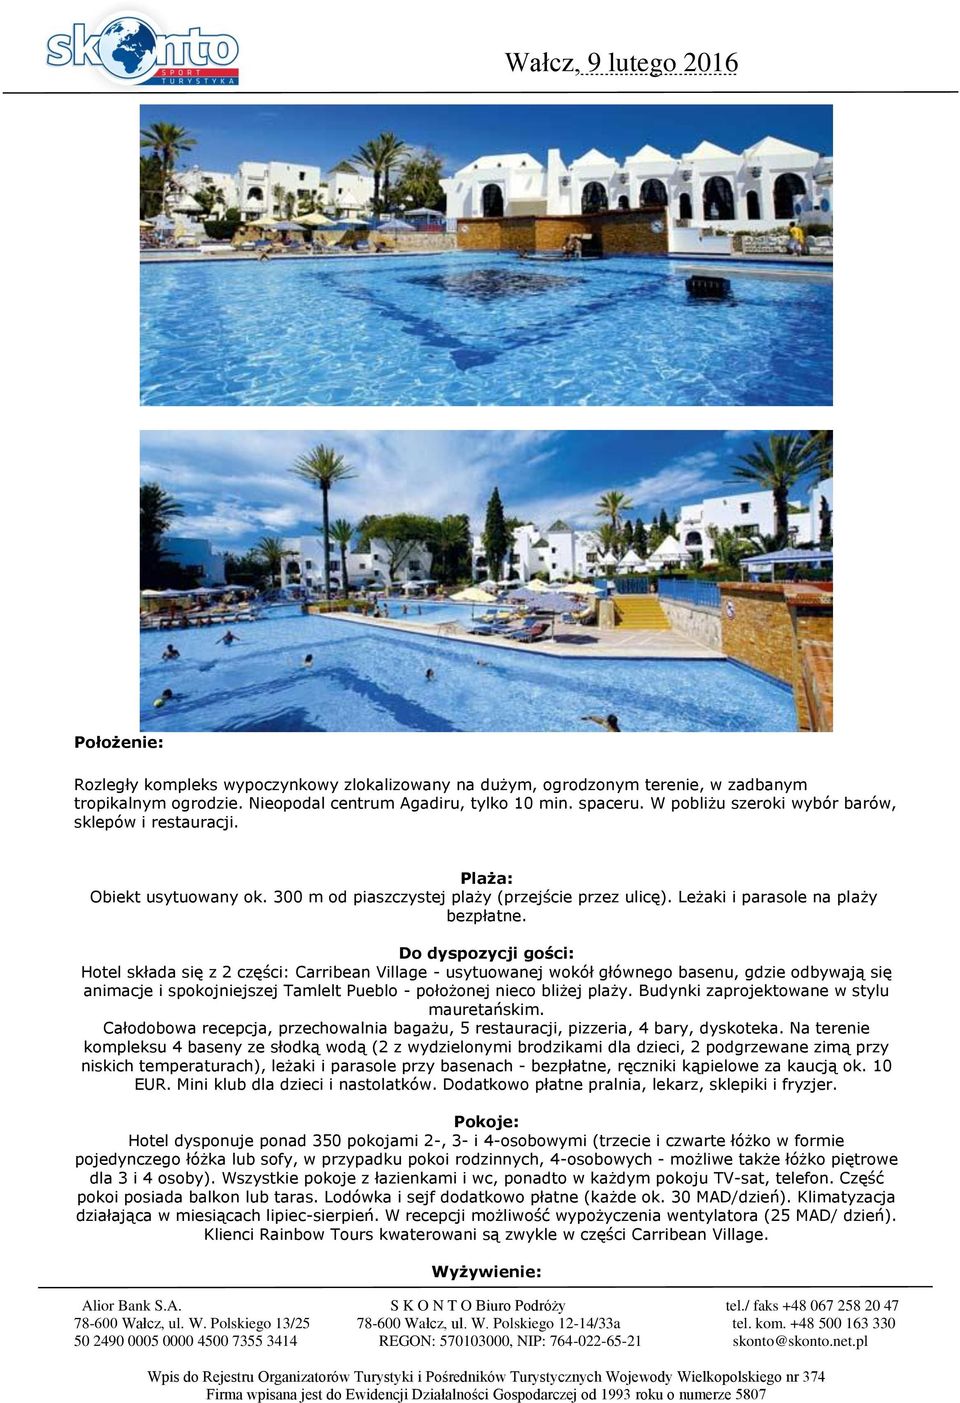 Hotel składa się z 2 części: Carribean Village - usytuowanej wokół głównego basenu, gdzie odbywają się animacje i spokojniejszej Tamlelt Pueblo - położonej nieco bliżej plaży.